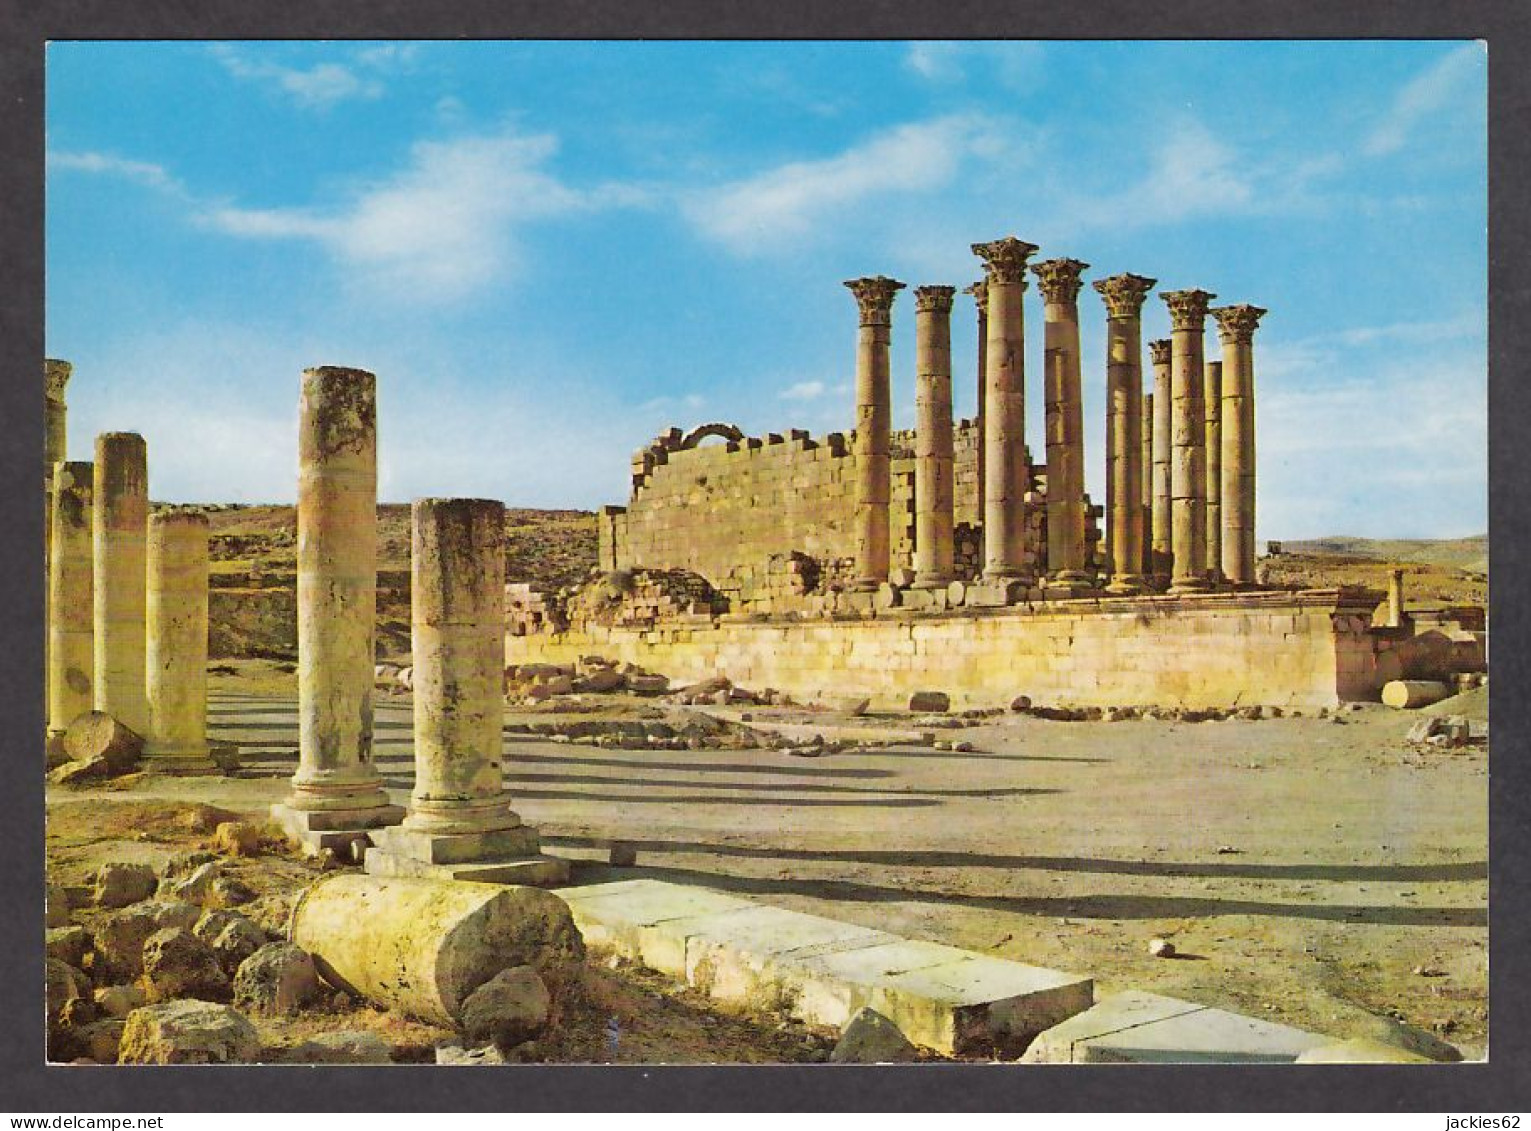 115719/ JERASH, The Temple Of Artemis - Jordanië